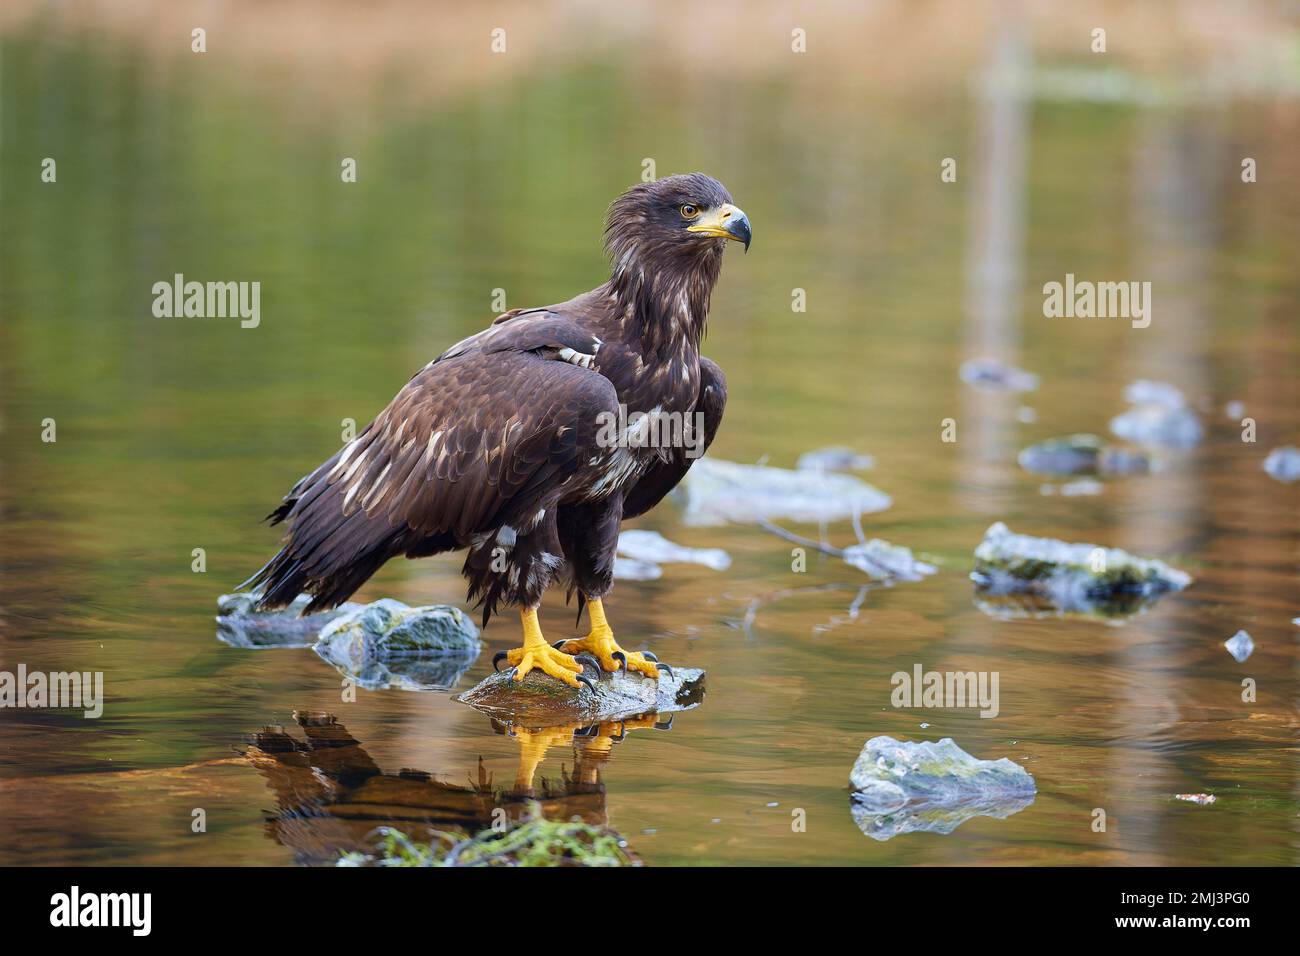 White-tailed eagle (Haliaeetus albicilla), sitting on stone in lake Stock Photo